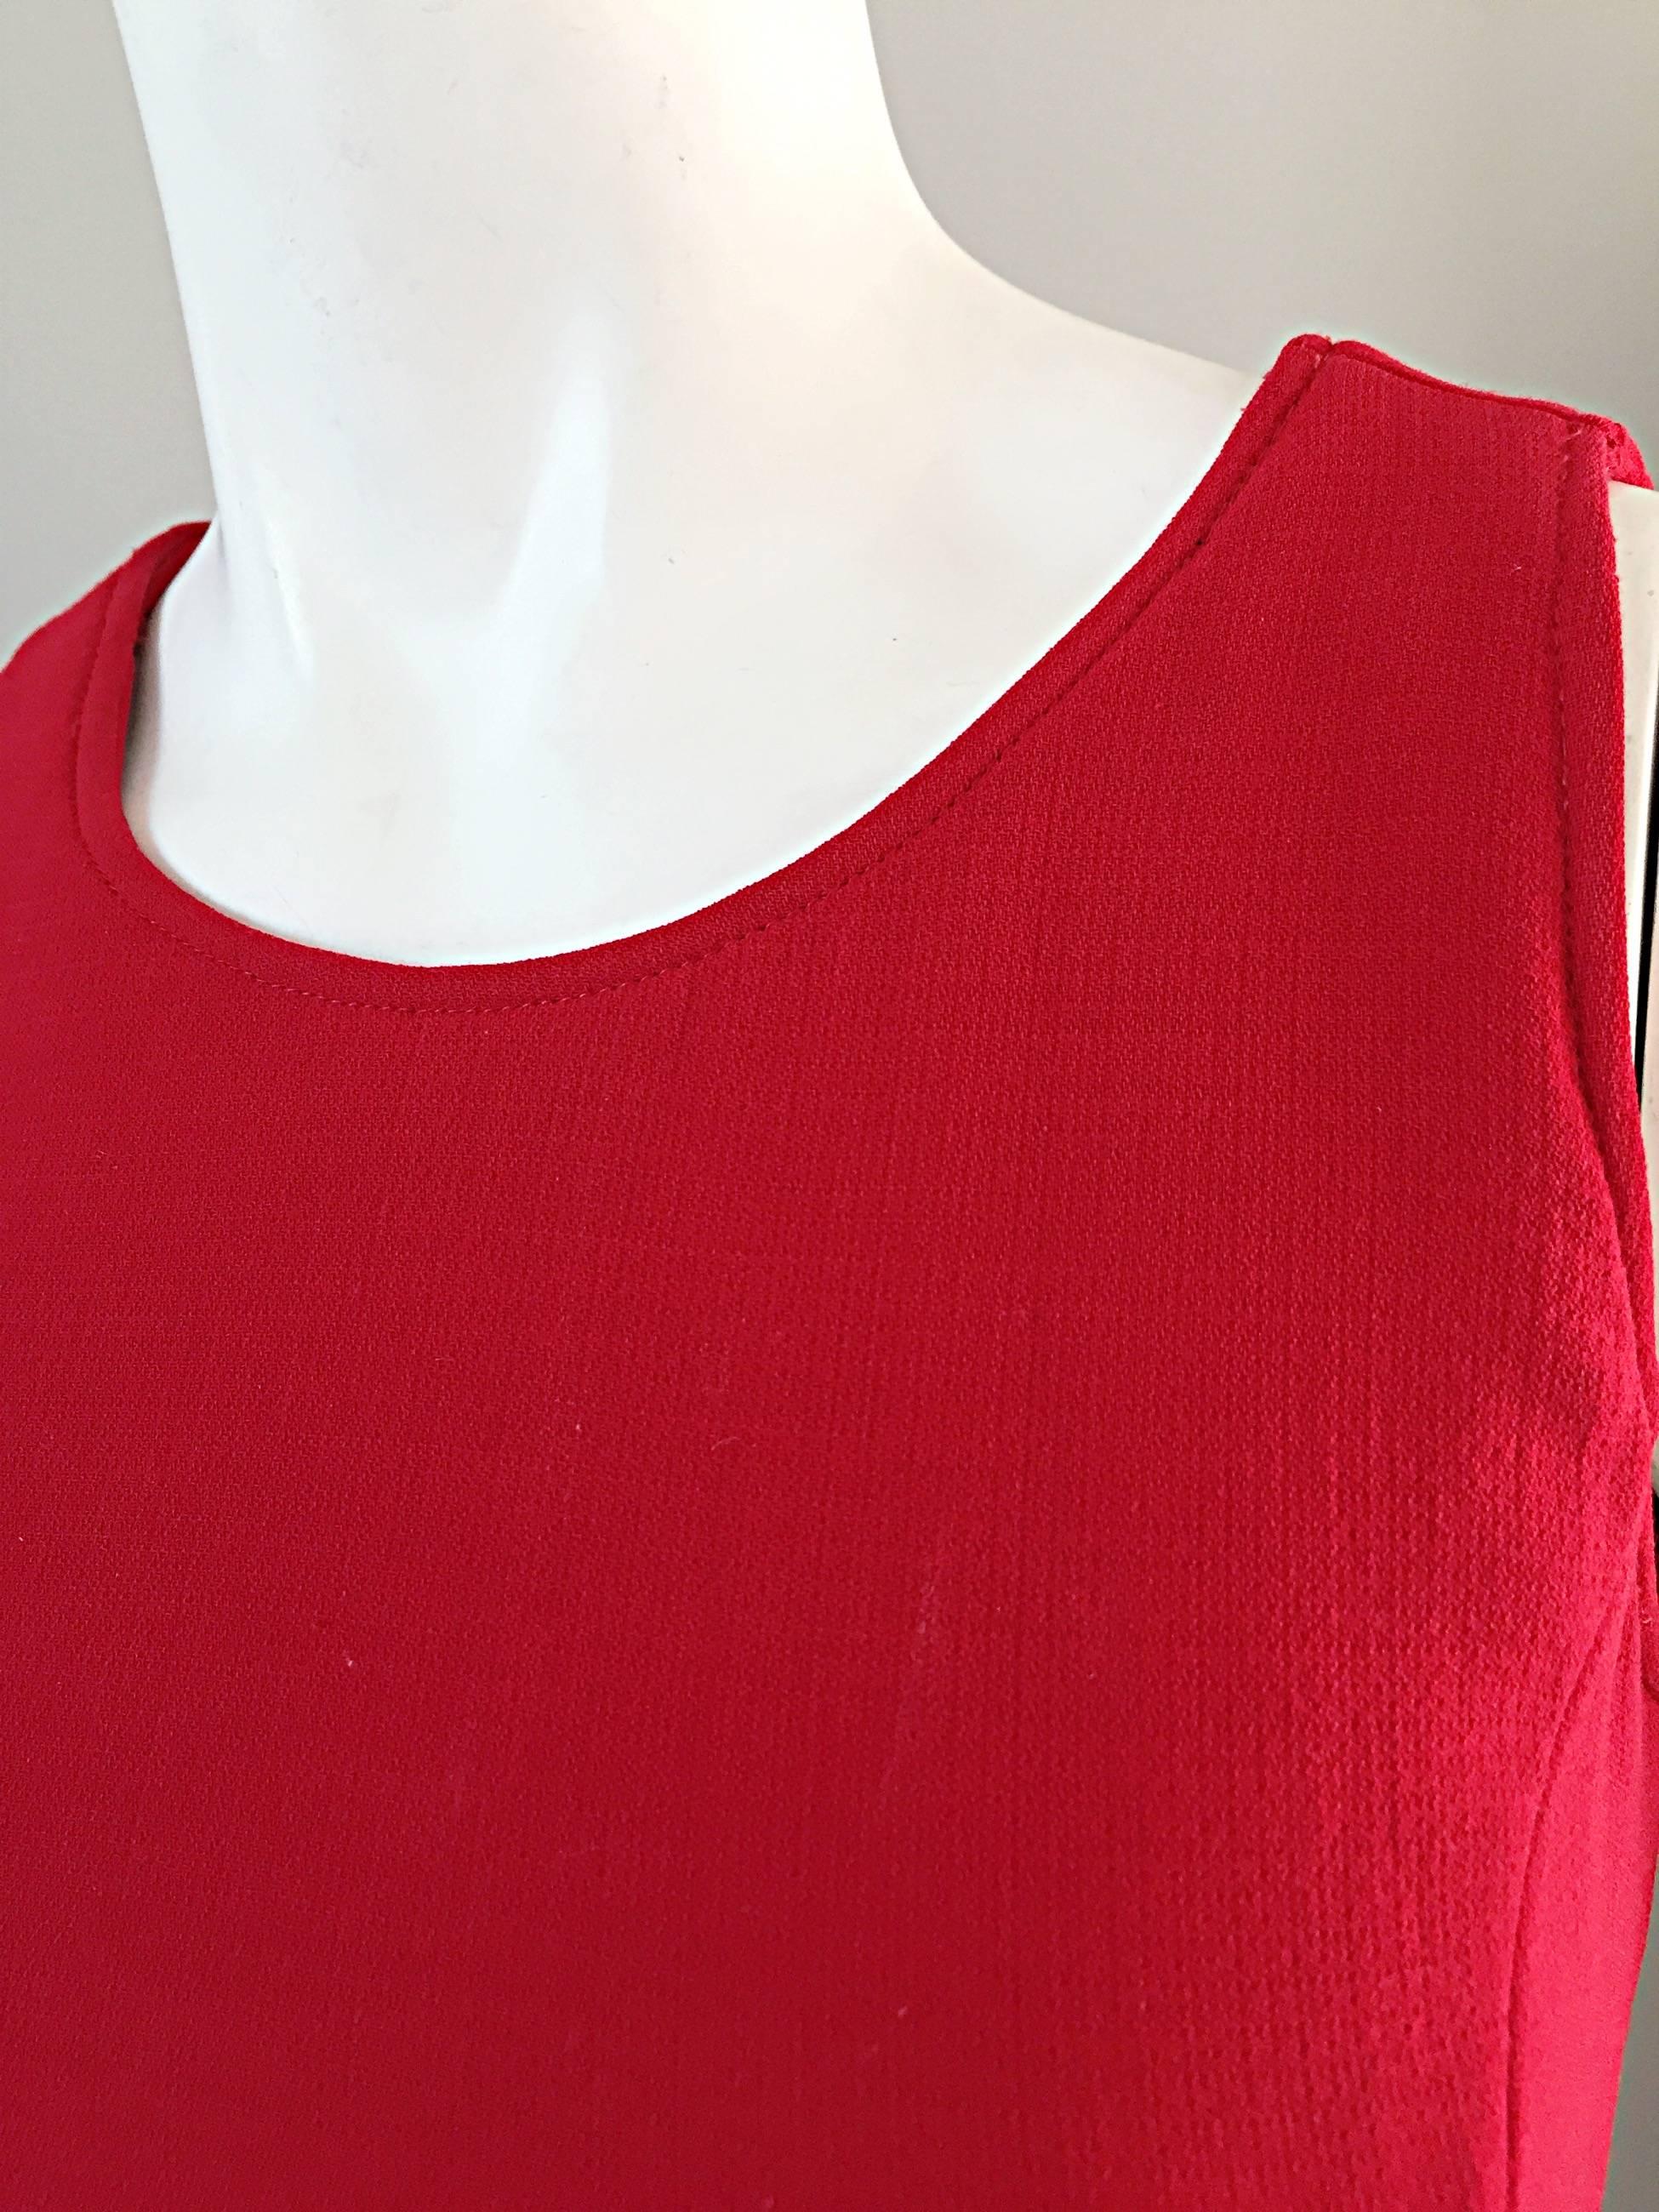 1990s Giorgio Armani Size 2 / 4 Body Con Vintage 90s Lipstick Red Dress  In Excellent Condition In San Diego, CA